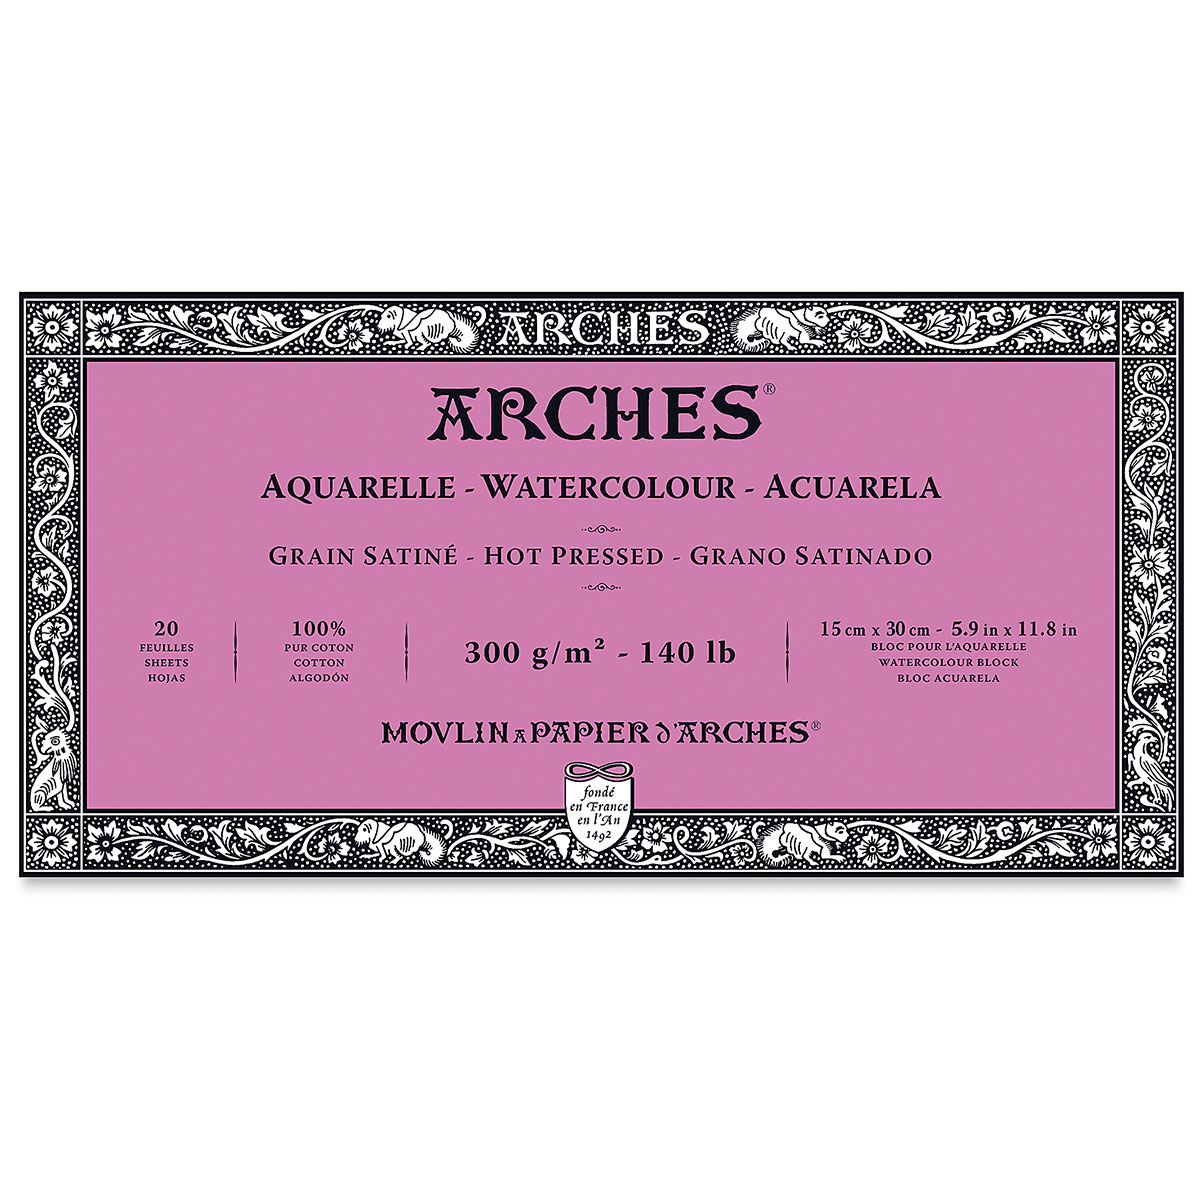 Бумага Arches 300 g. Бумага Arches Cold Press. Бумага Arches 300 g холодный пресс. Arches бумага 1914. Hot pressed